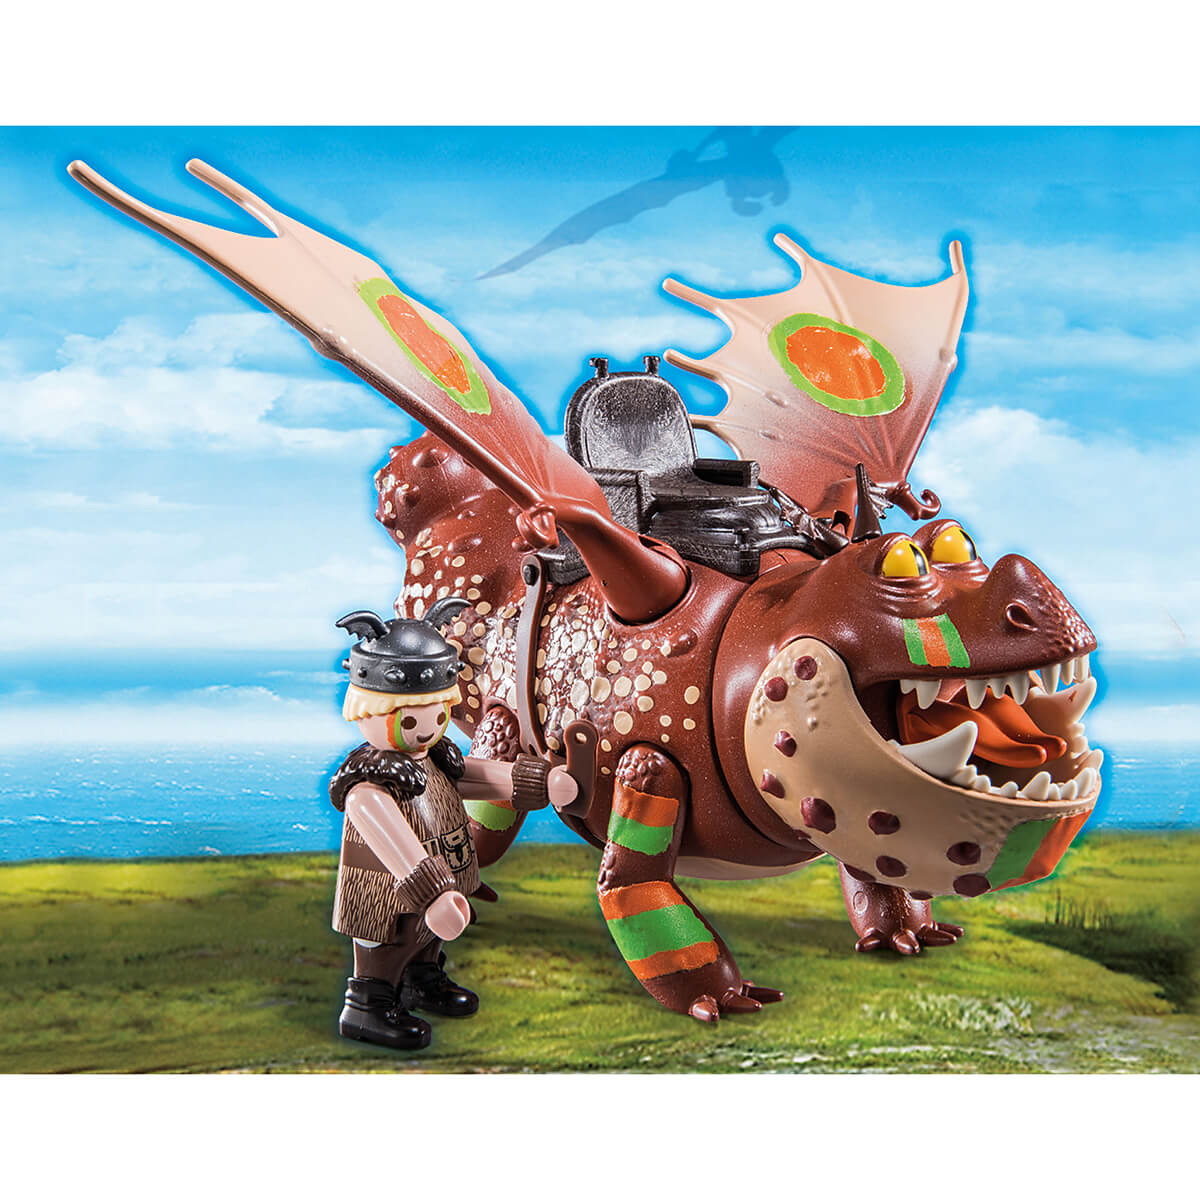 PLAYMOBIL DreamWorks Dragons Race to the Edge Dragon Racing: Fishlegs and Meatlug  (70729)